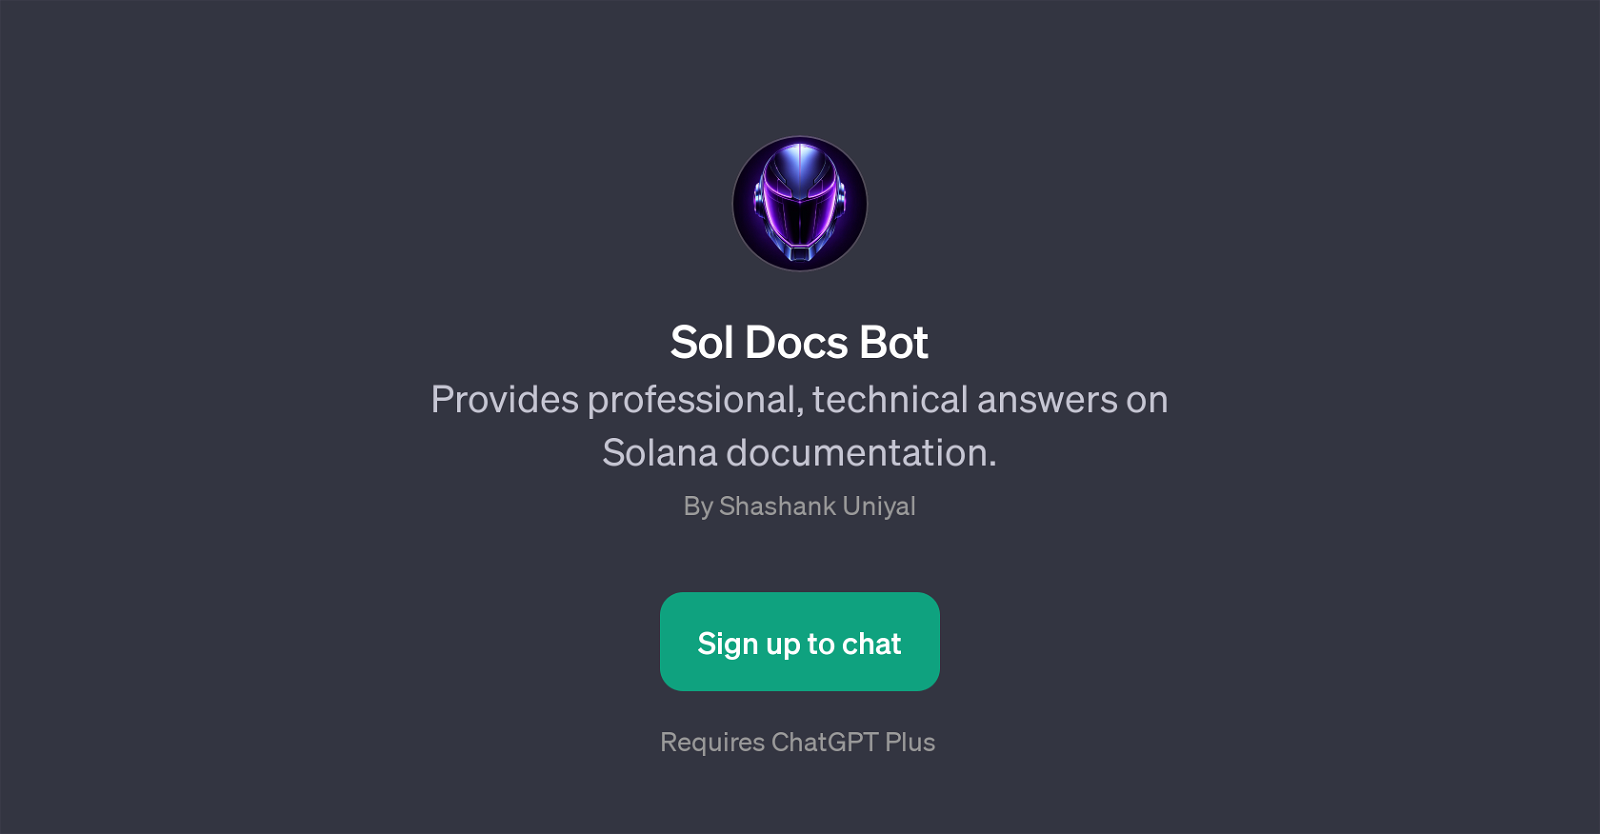 Sol Docs Bot website